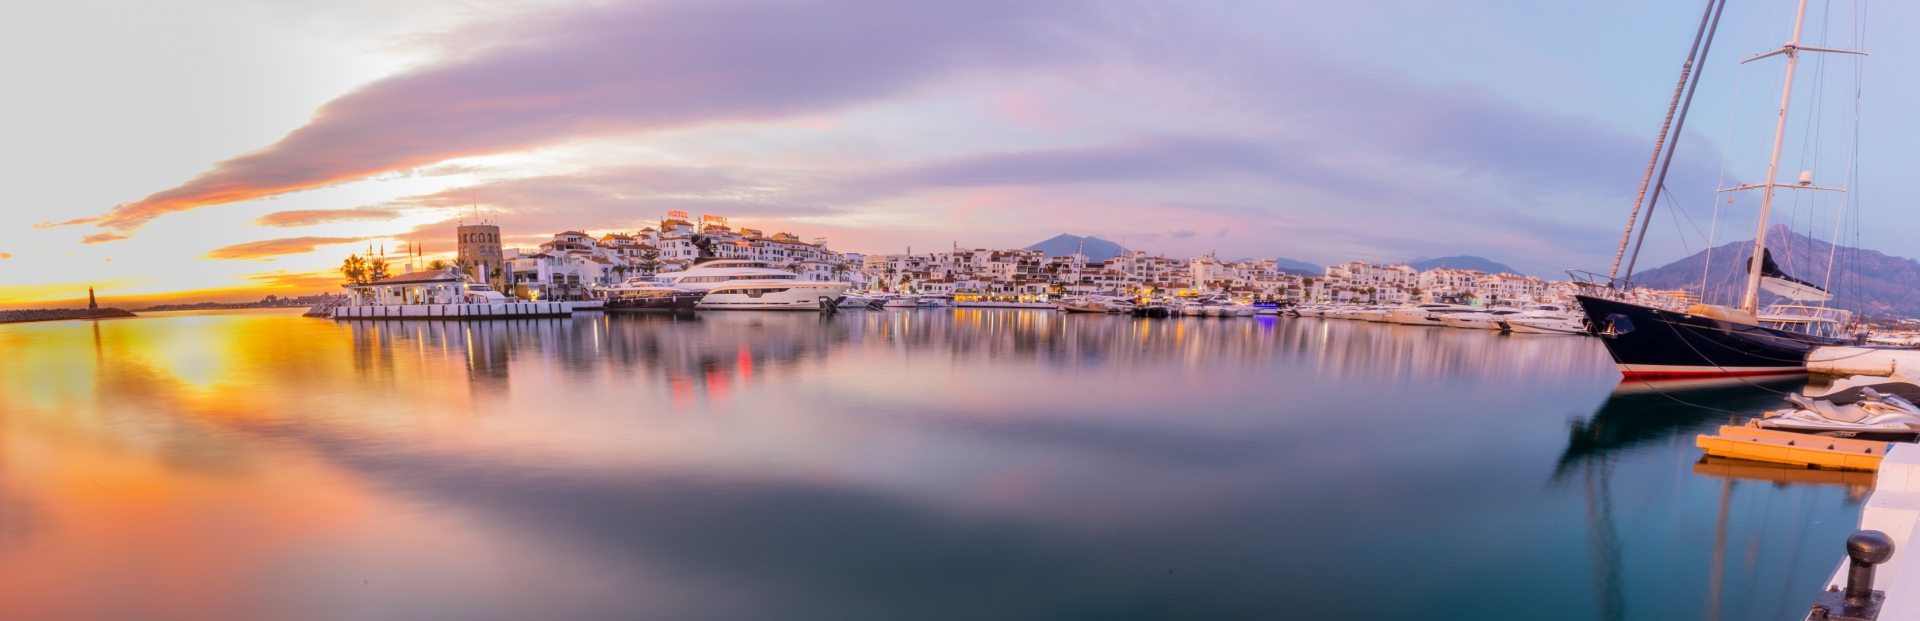 Puerto Banús: De Prachtigste Jachthaven van Zuid-Spanje